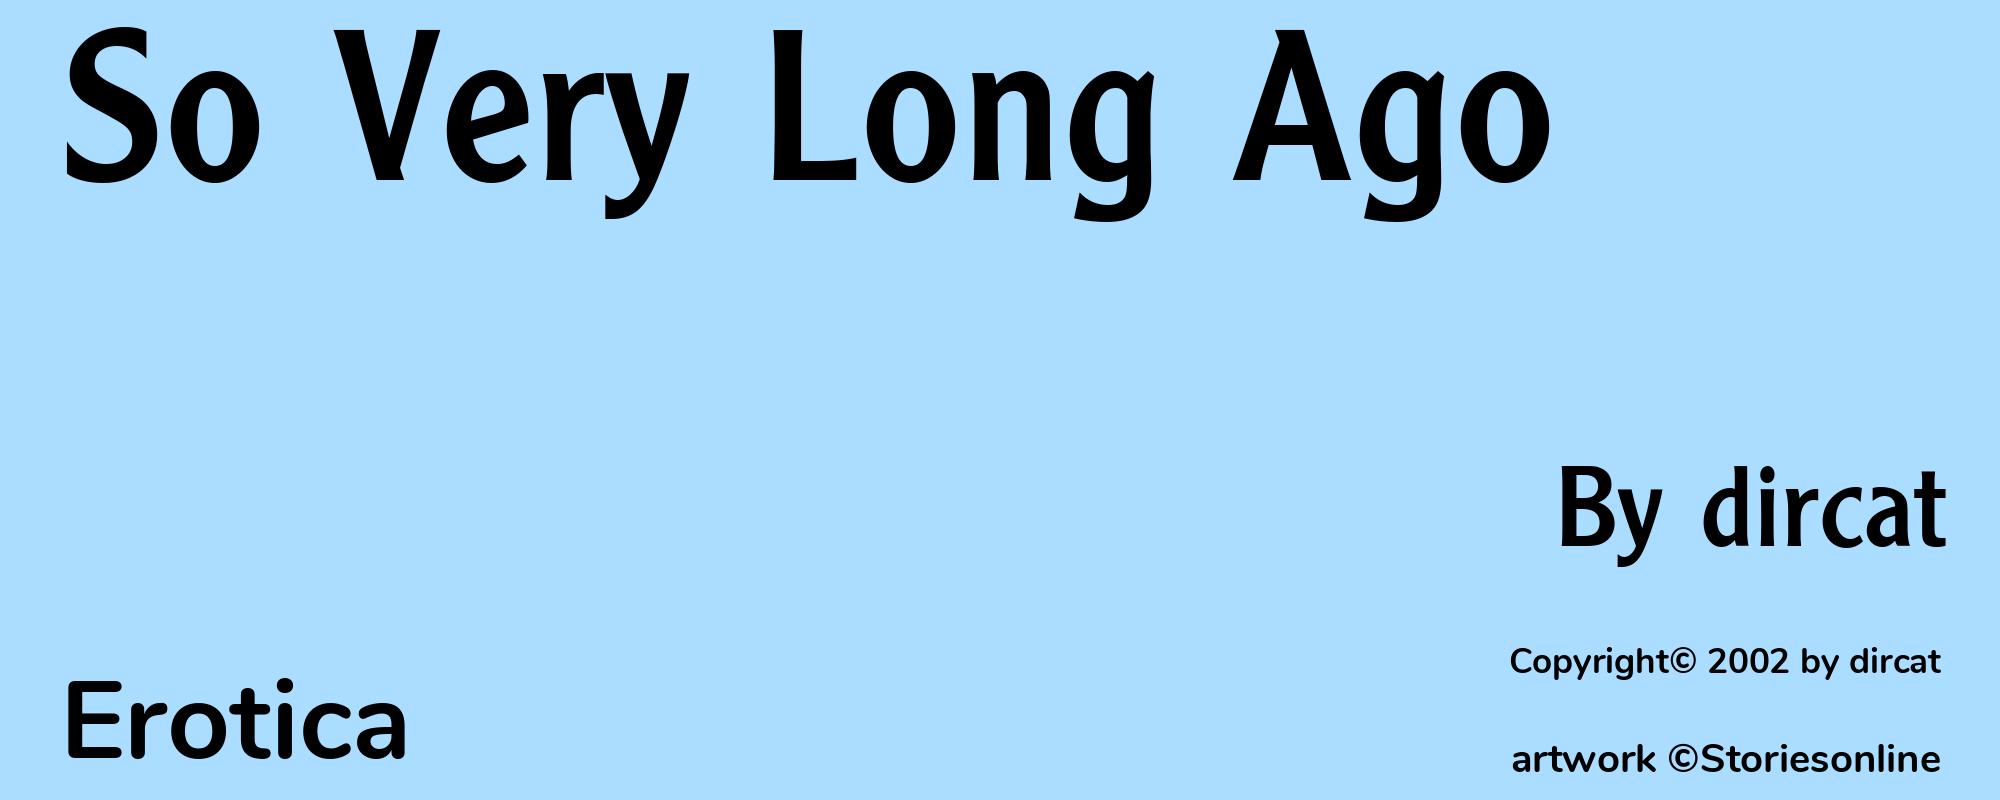 So Very Long Ago - Cover